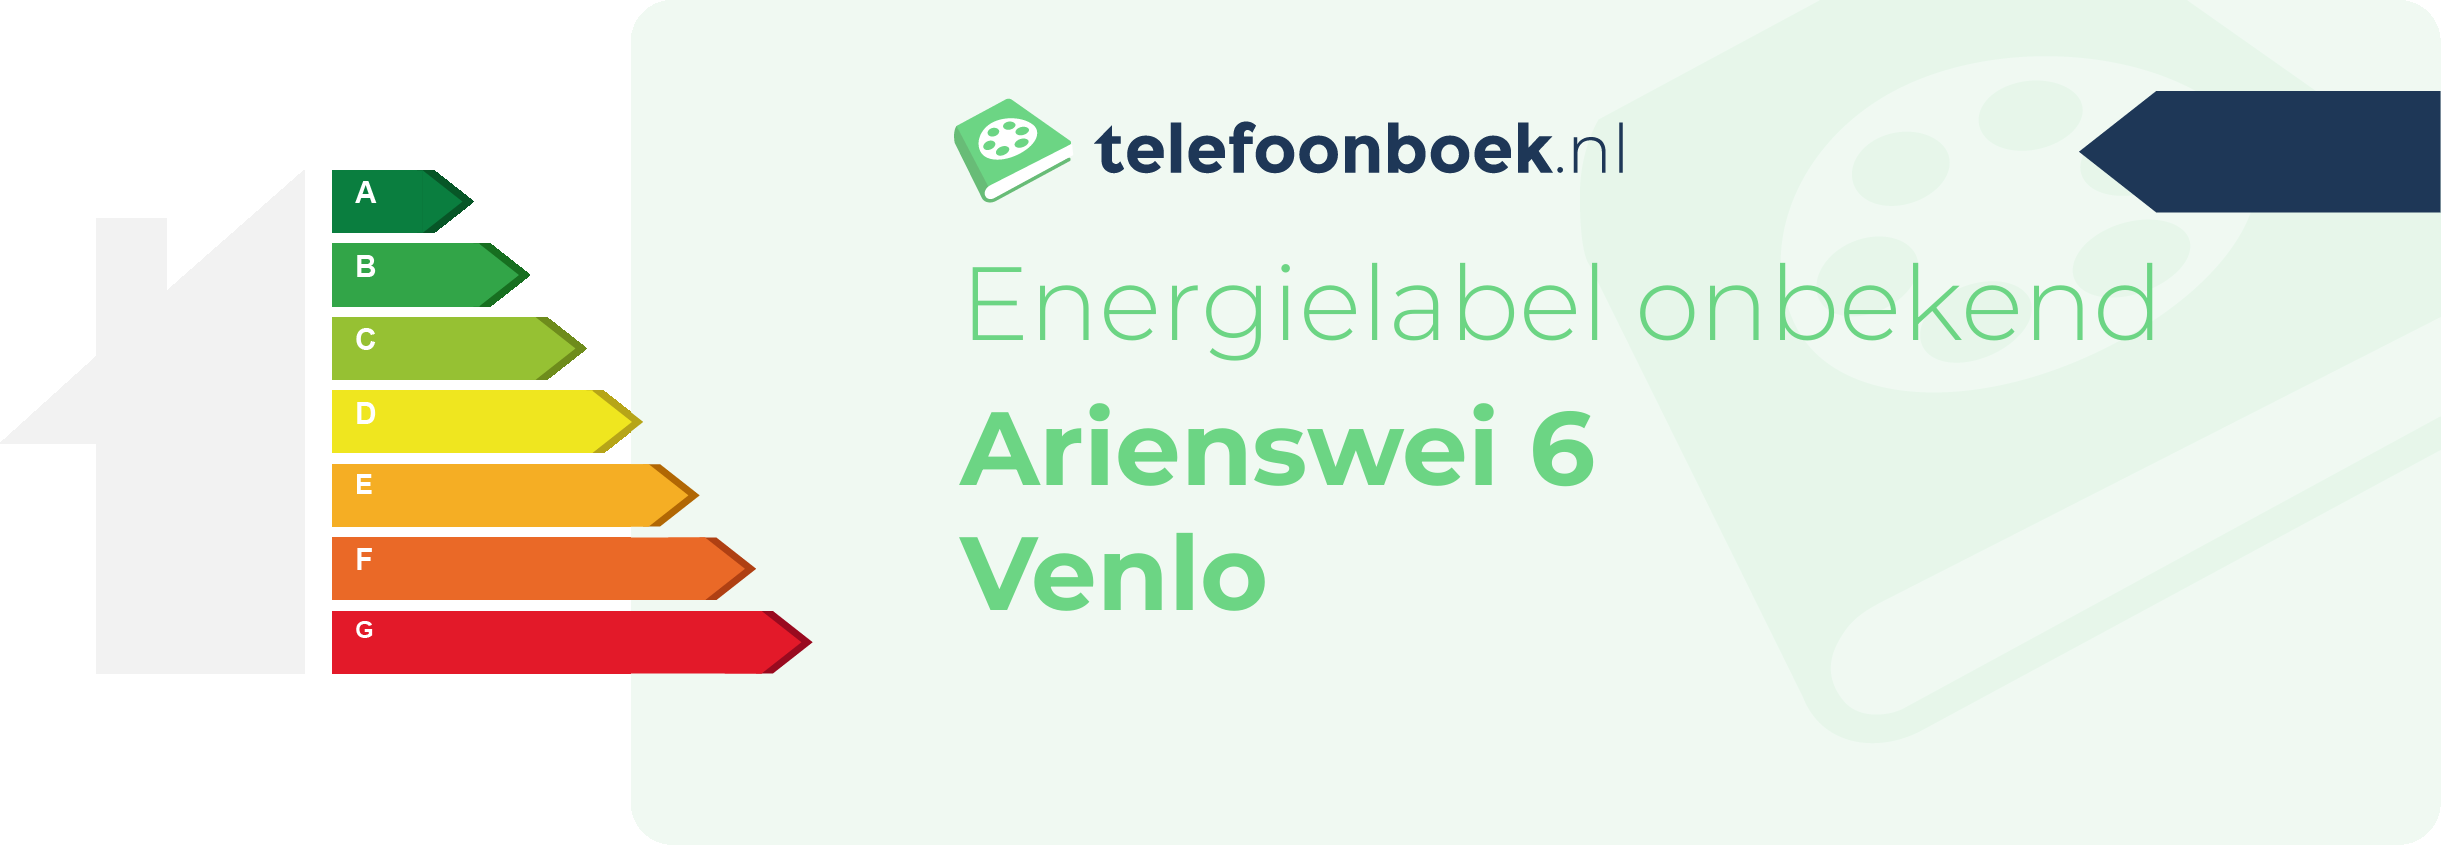 Energielabel Arienswei 6 Venlo